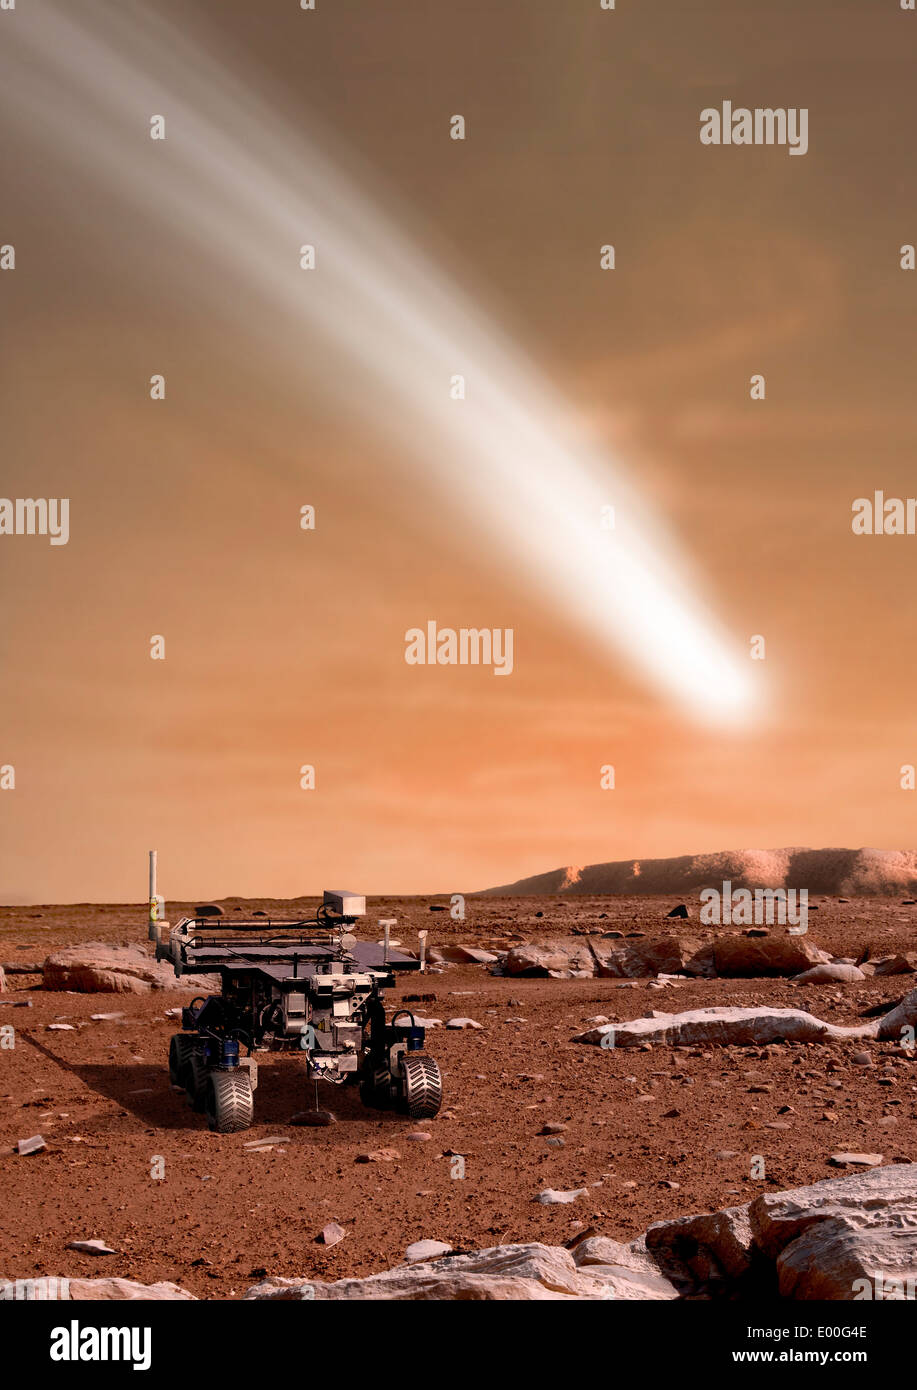 Ein Künstler Darstellung des engen Pass des Kometen C/2013 A1 über den Mars. Stockfoto